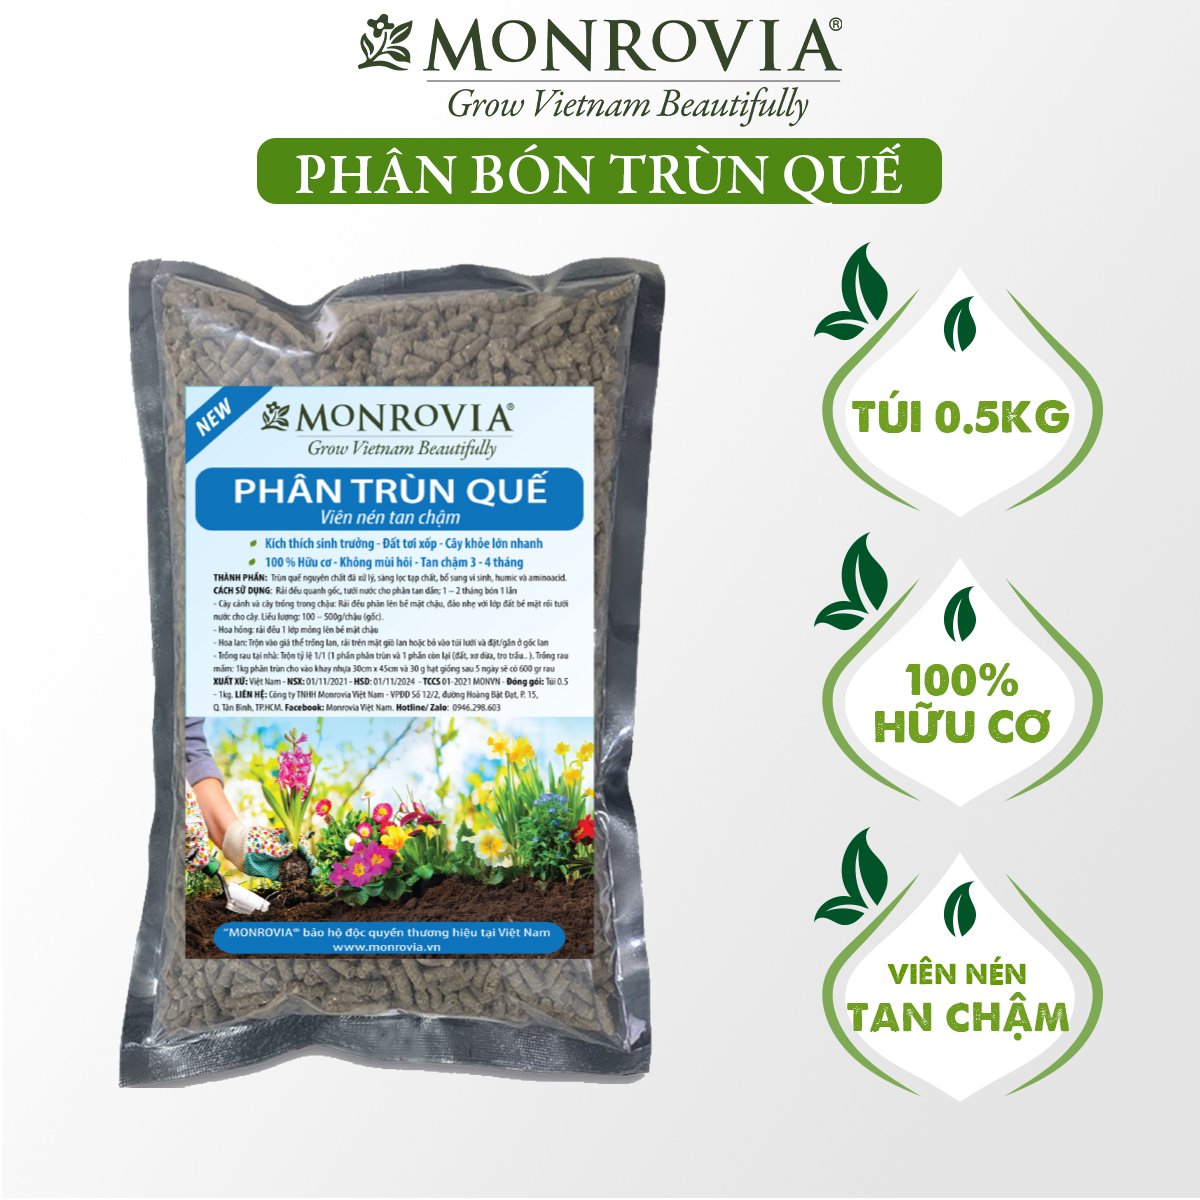 Phân trùn quế nguyên chất MONROVIA, viên nén tan chậm hữu cơ bón cho hoa hồng, lan, cây cảnh, rau củ quả